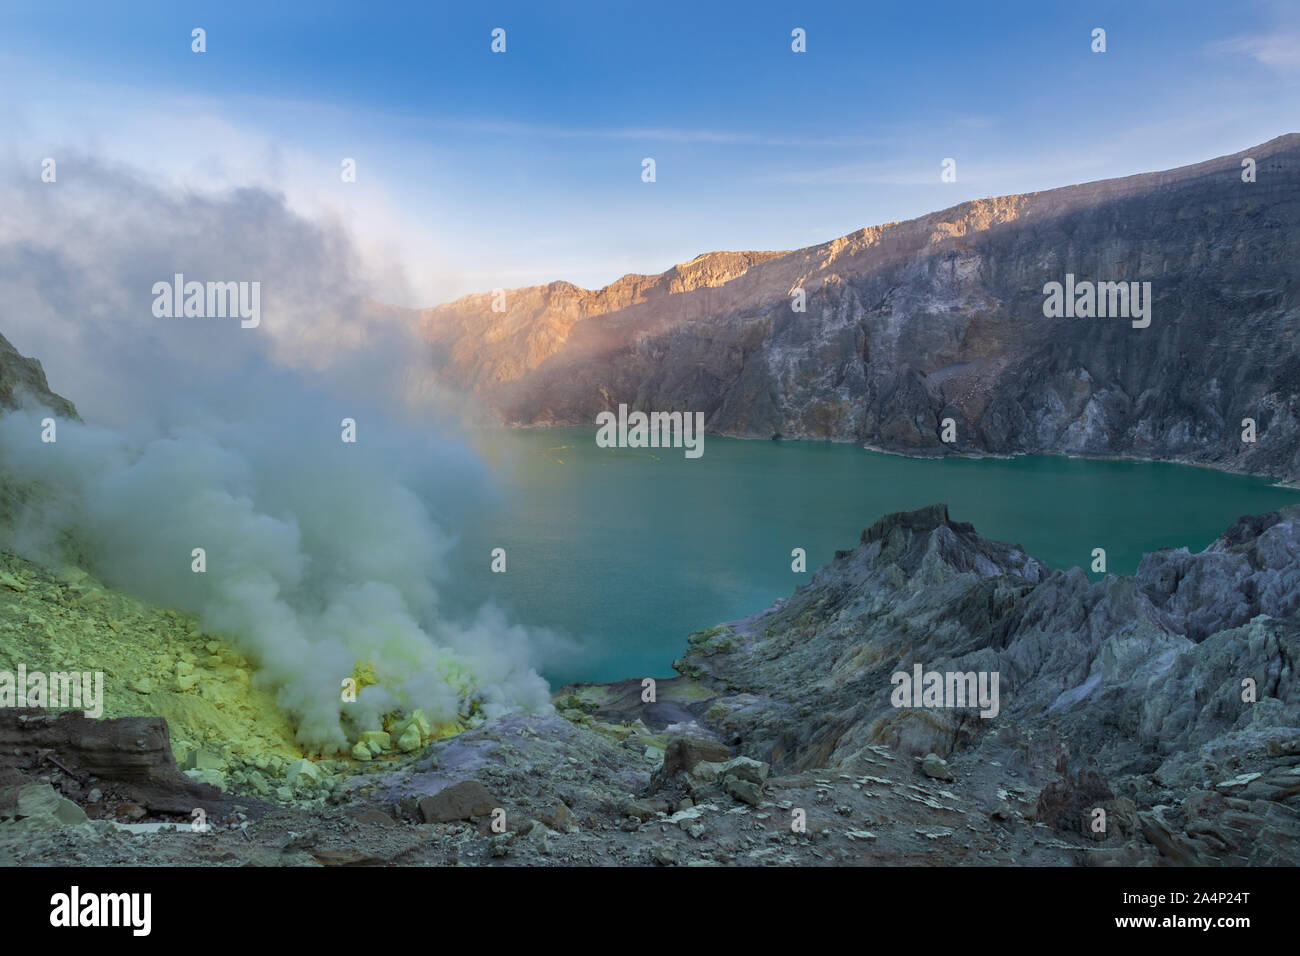 Lago acido nel cratere del Monte Ijen, Java Orientale, Indonesia. Fumo e depositi di zolfo sulla riva dalle bocche vulcaniche. Blue sky lontano dietro la parete del cratere. Foto Stock